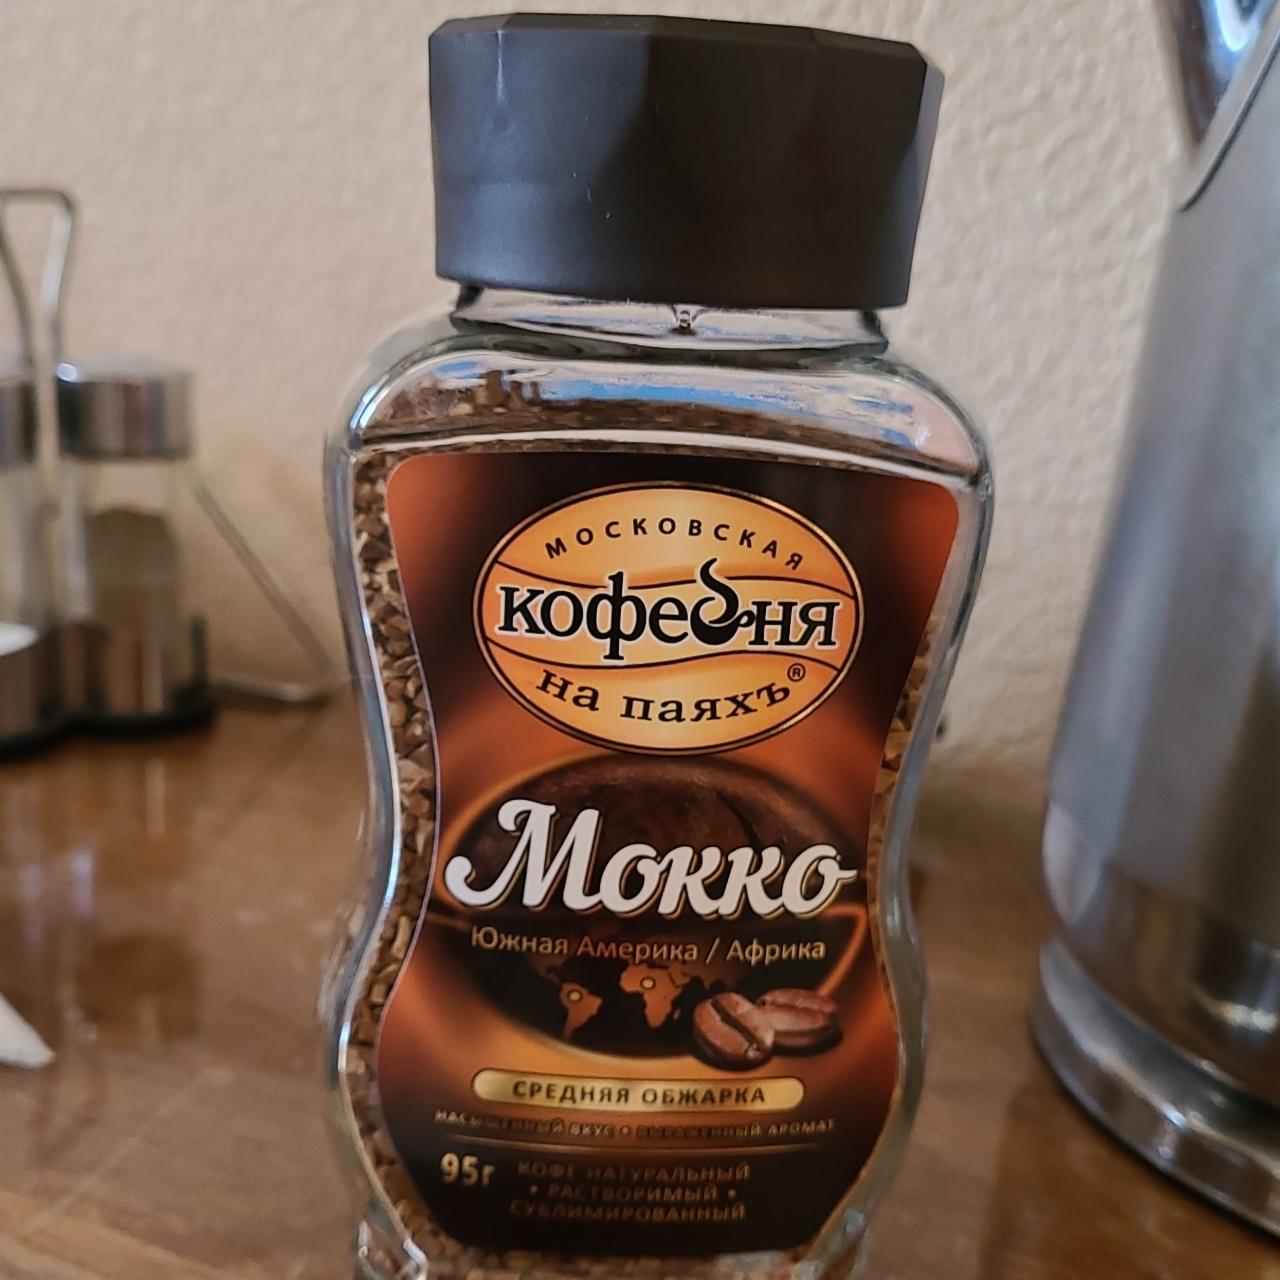 Фото - Кофе растворимый Мокко Московская Кофейня на паяхъ